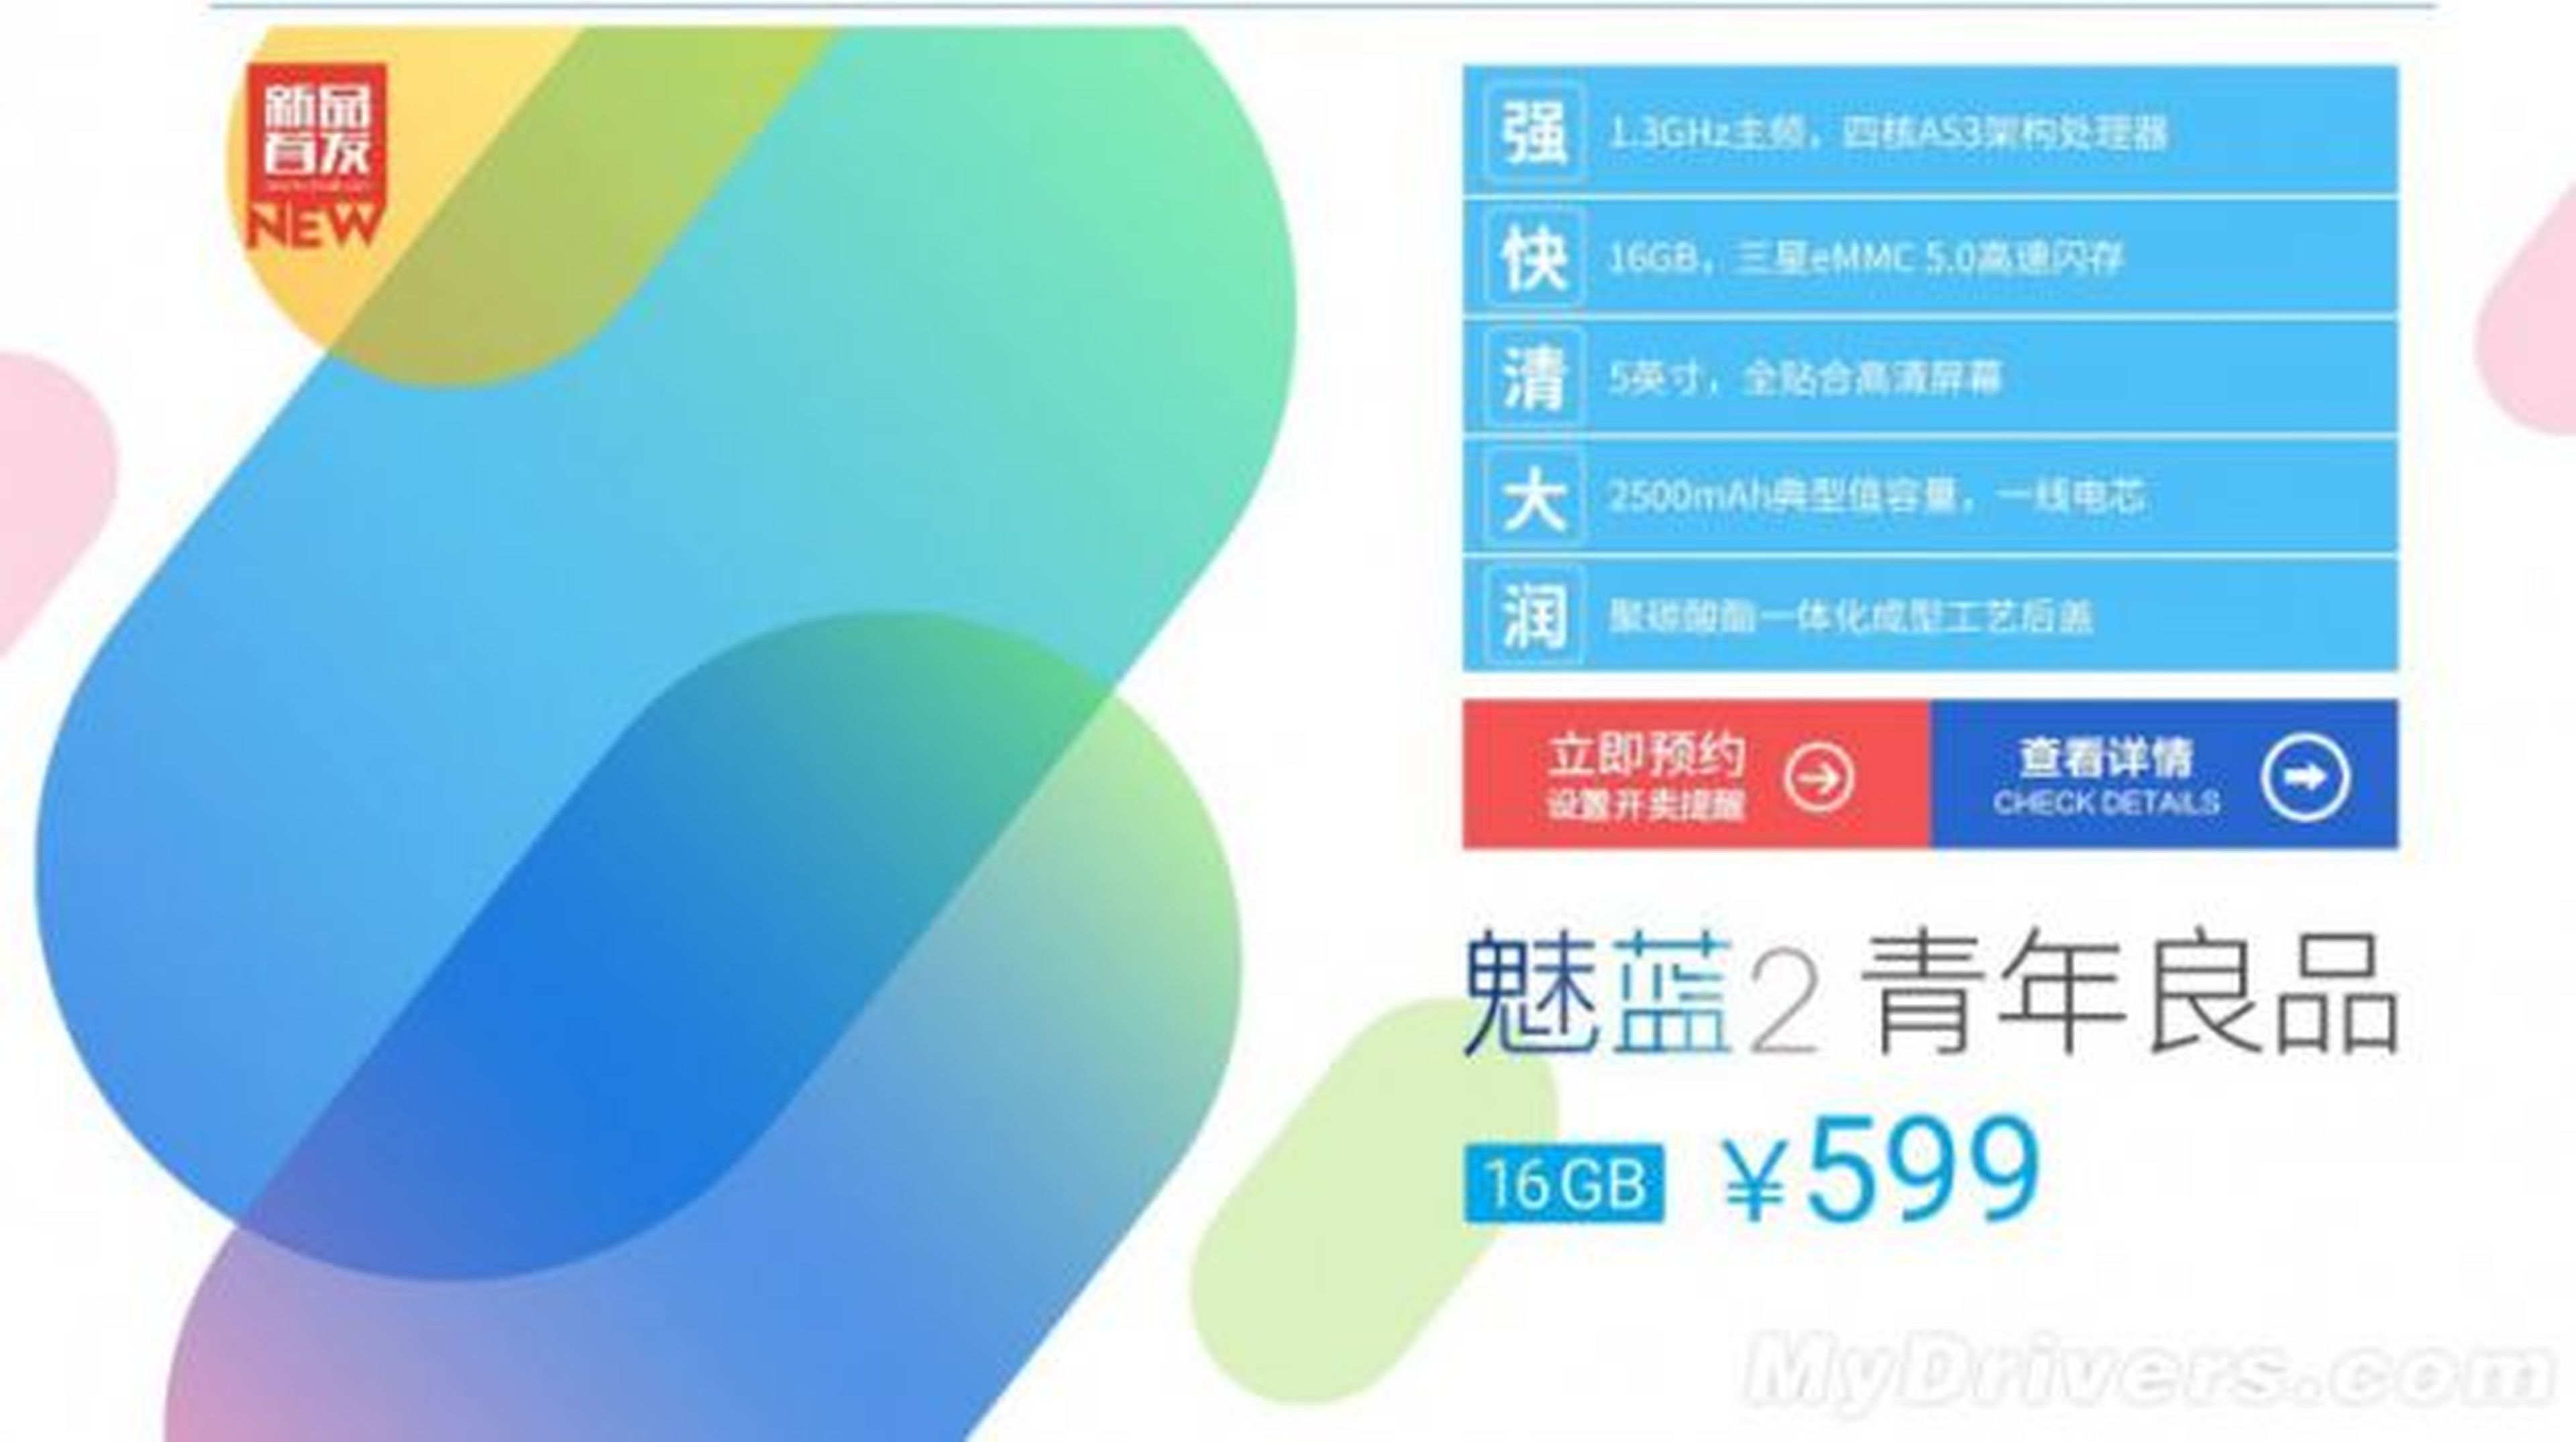 Se filtran el precio y las especificaciones del Meizu M2 un día antes de su lanzamiento